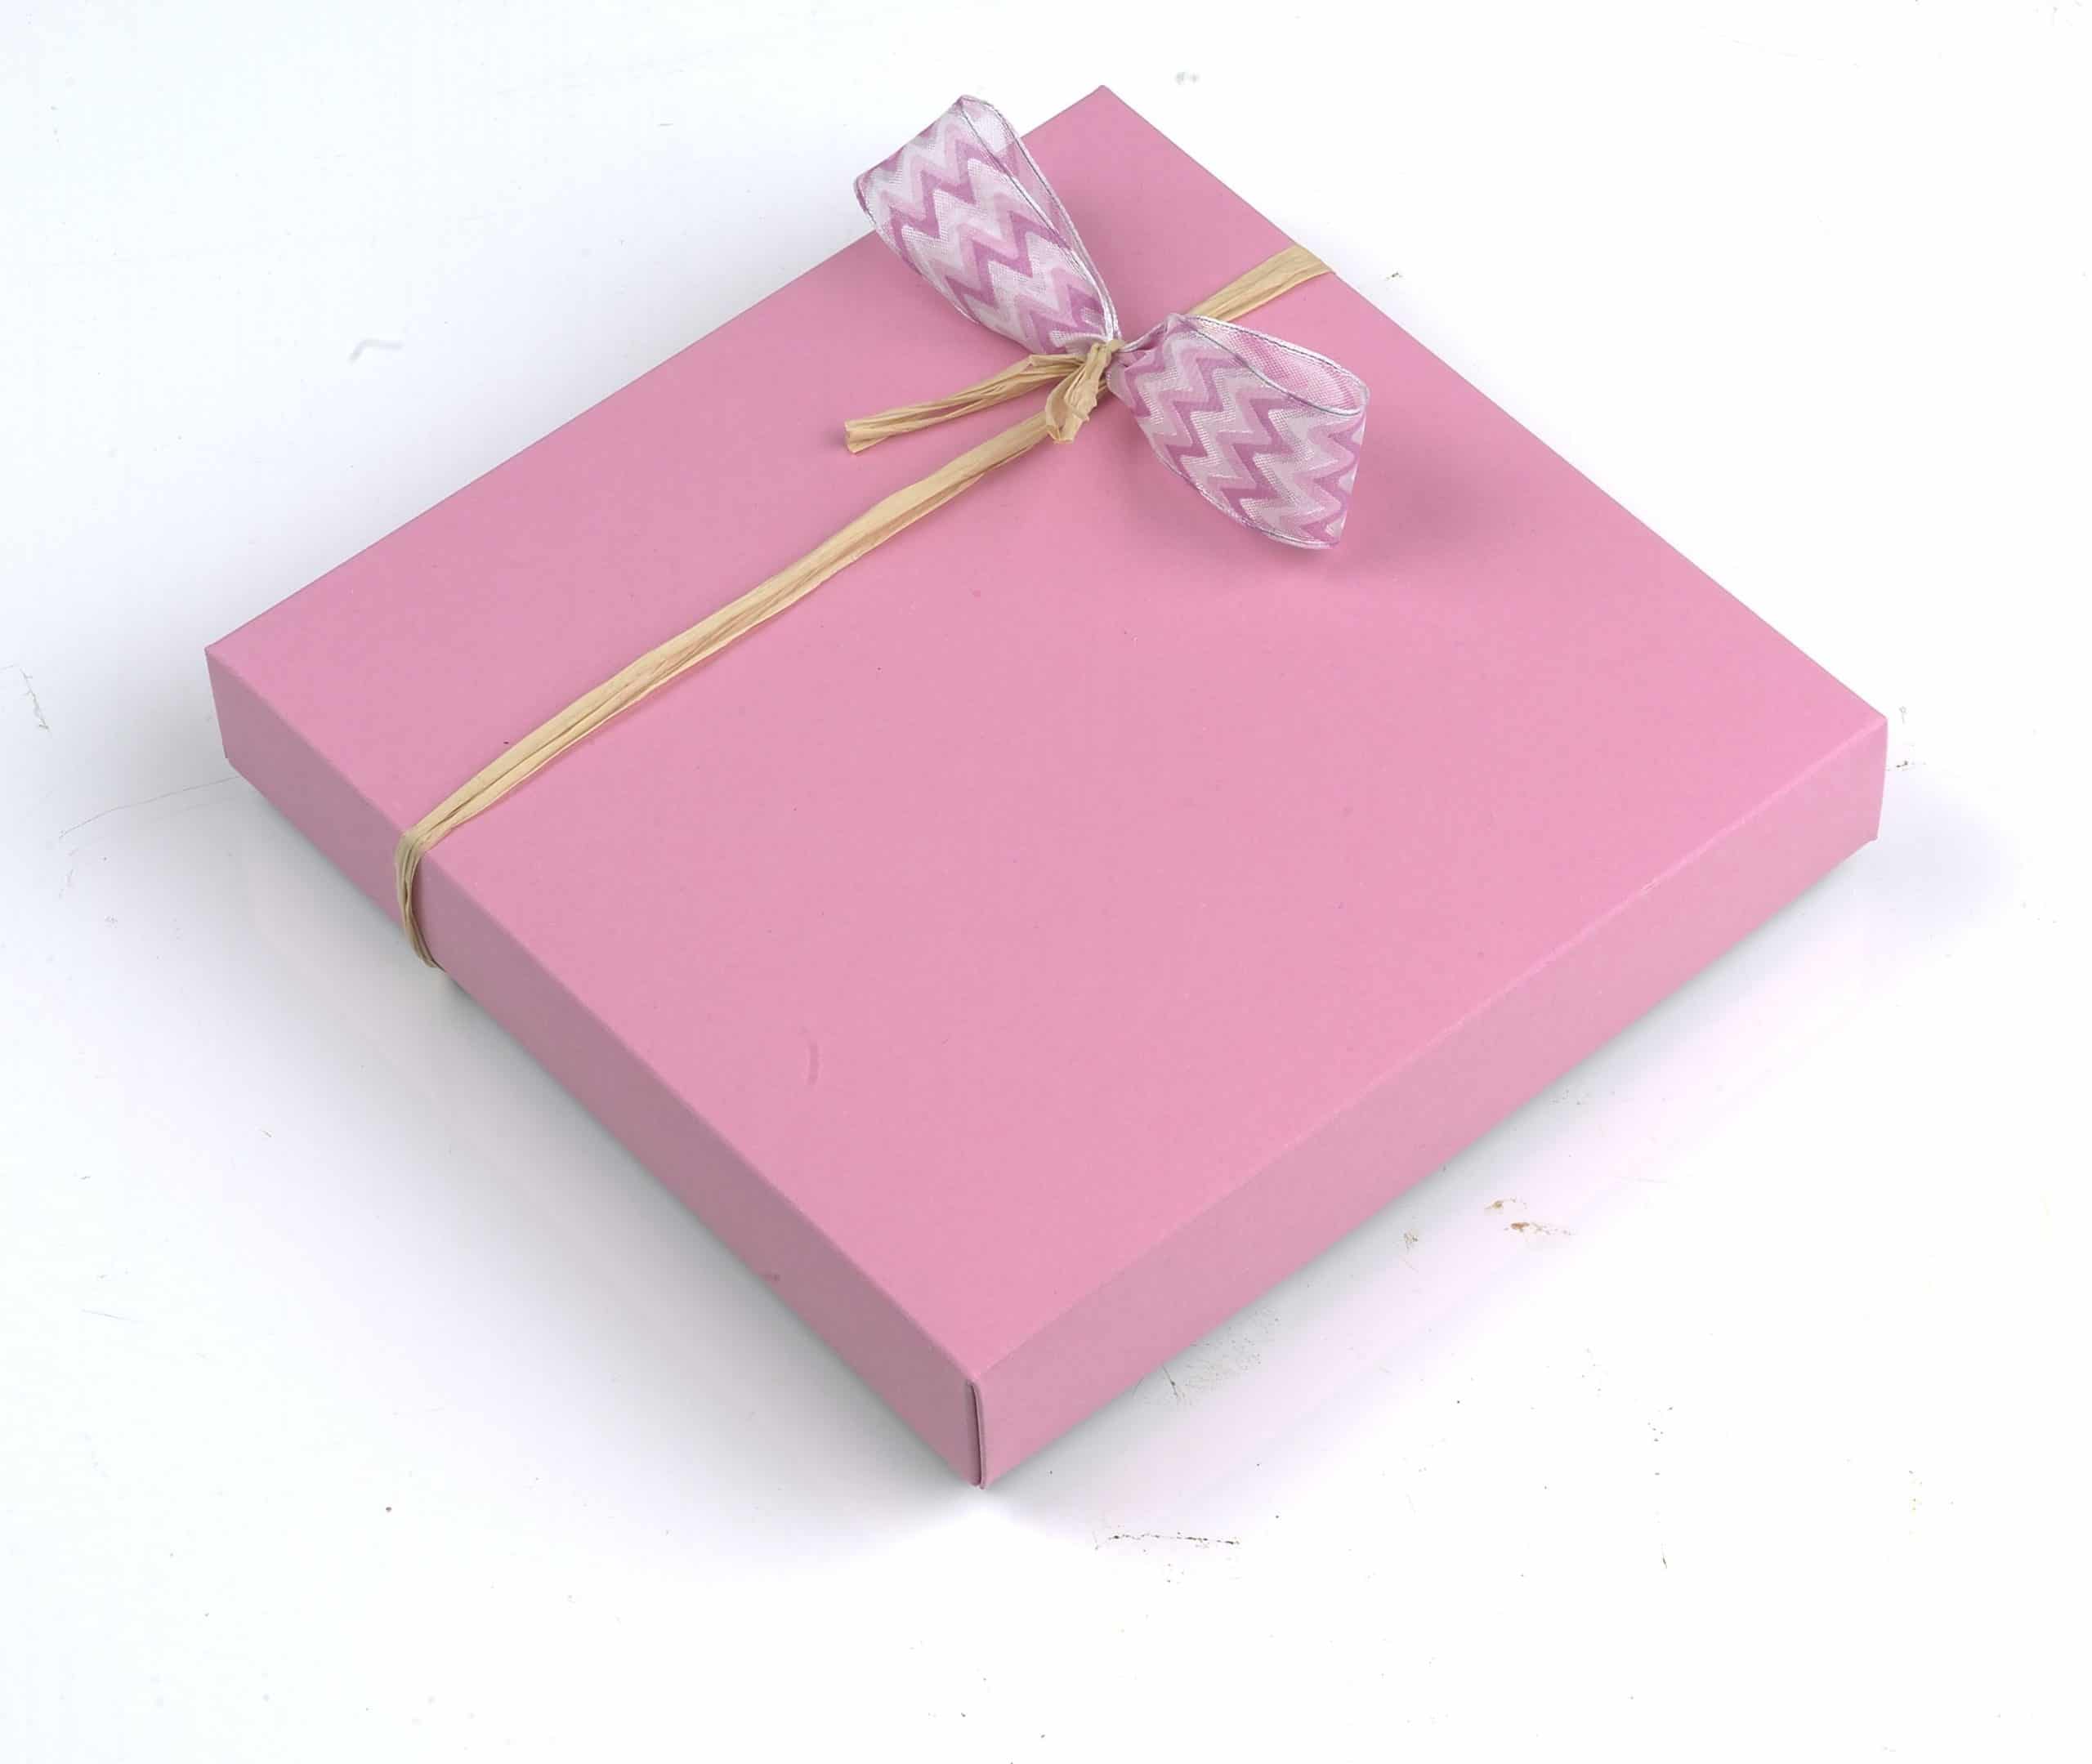 16er Schatulle "Rosenzauber" von Schell Schokoladen hat eine pinke Verpackung mit einer pinken Schleife an einem Strohband.